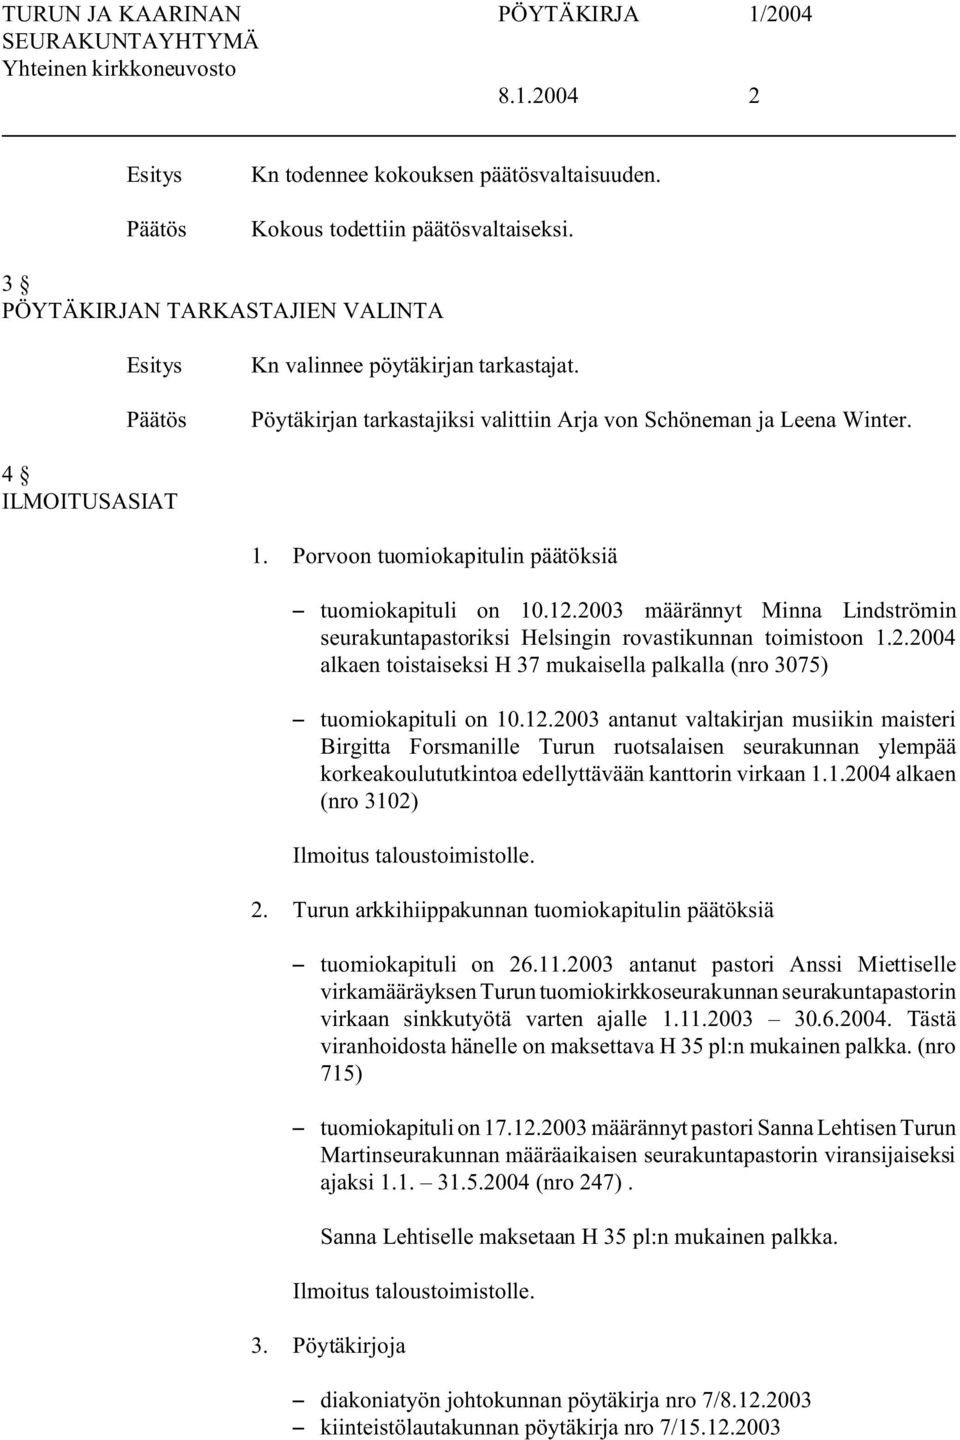 2003 määrännyt Minna Lindströmin seurakuntapastoriksi Helsingin rovastikunnan toimistoon 1.2.2004 alkaen toistaiseksi H 37 mukaisella palkalla (nro 3075) S tuomiokapituli on 10.12.